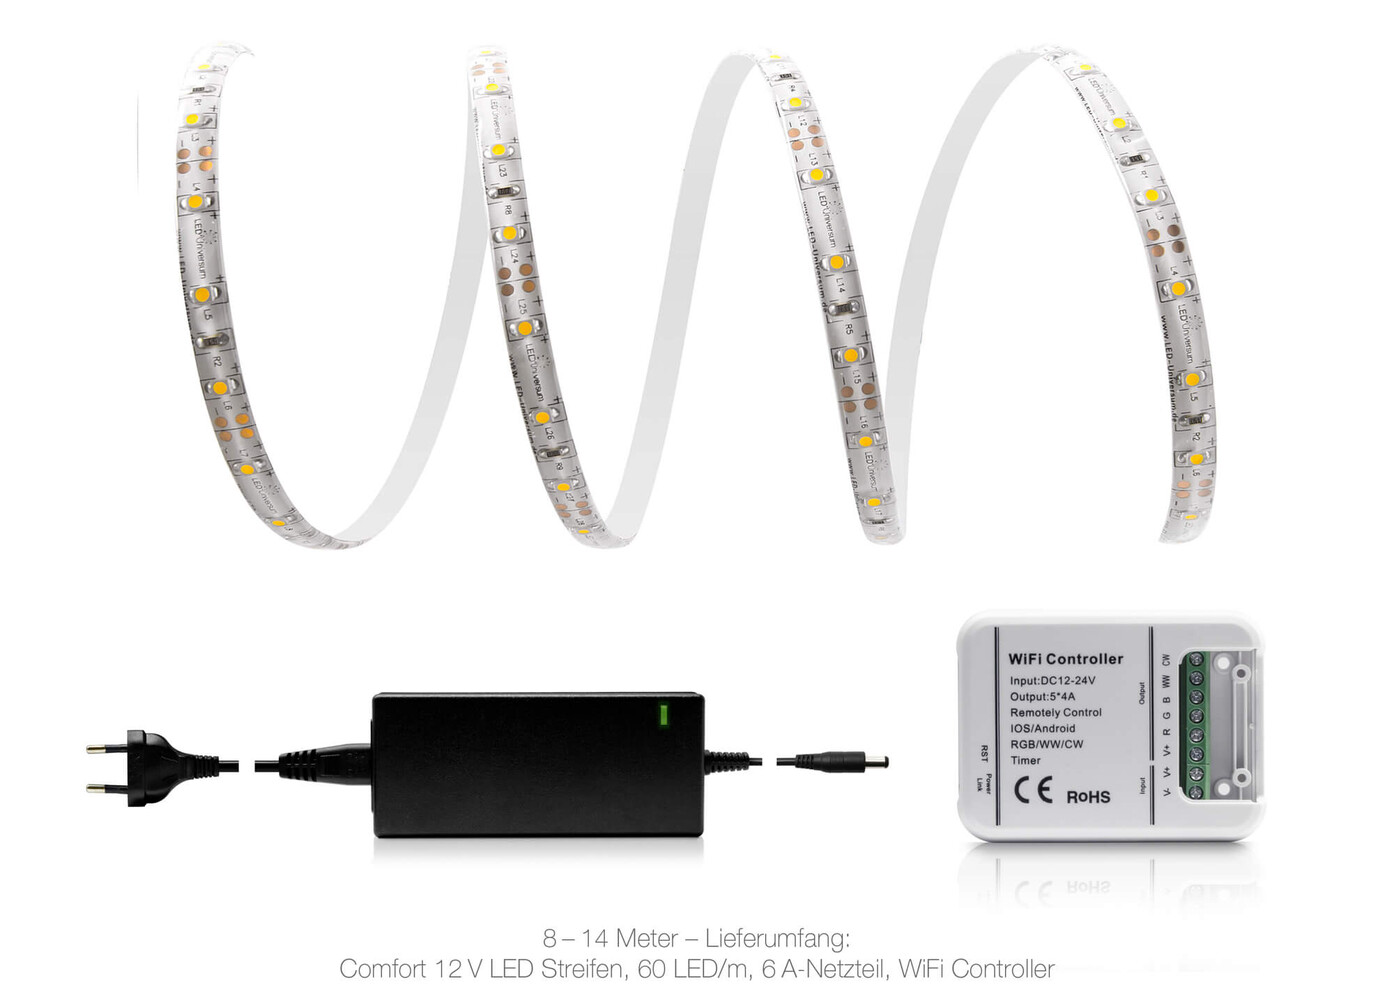 LED Streifen in warmweiß von LED Universum, als komplettes Set inklusive Netzteil und Controller